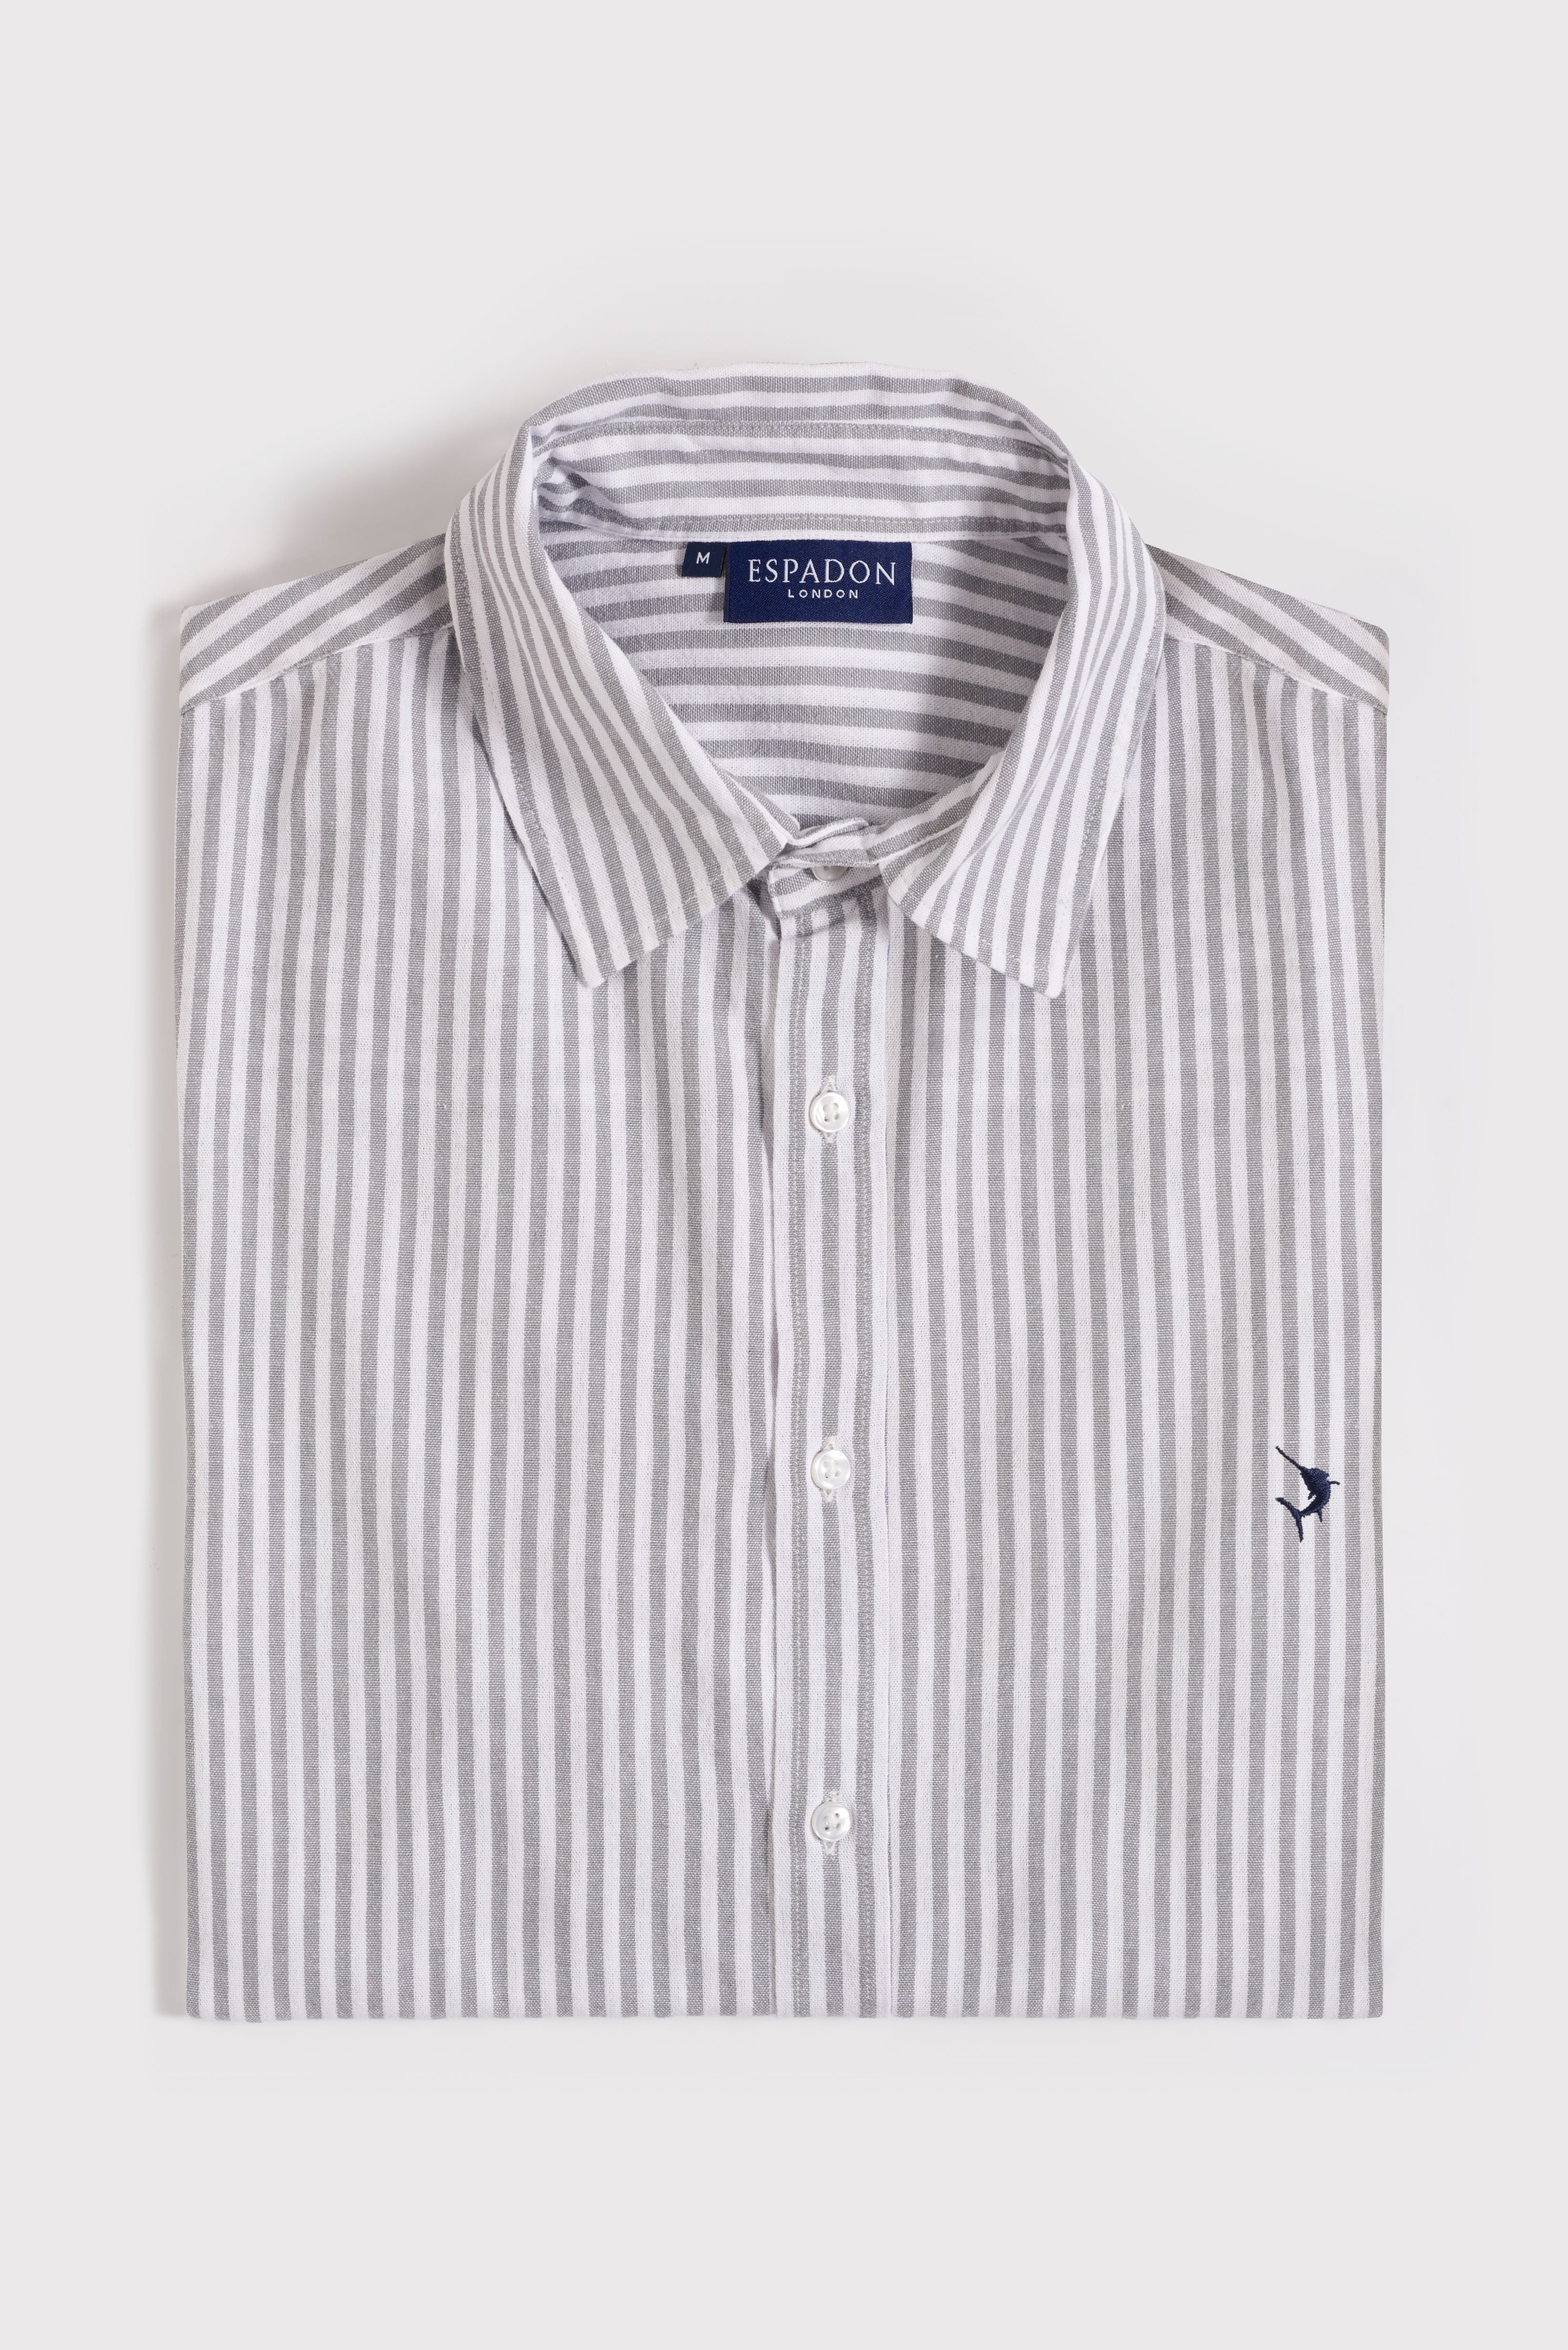 Espadon Striped Cotton Shirt - Grey